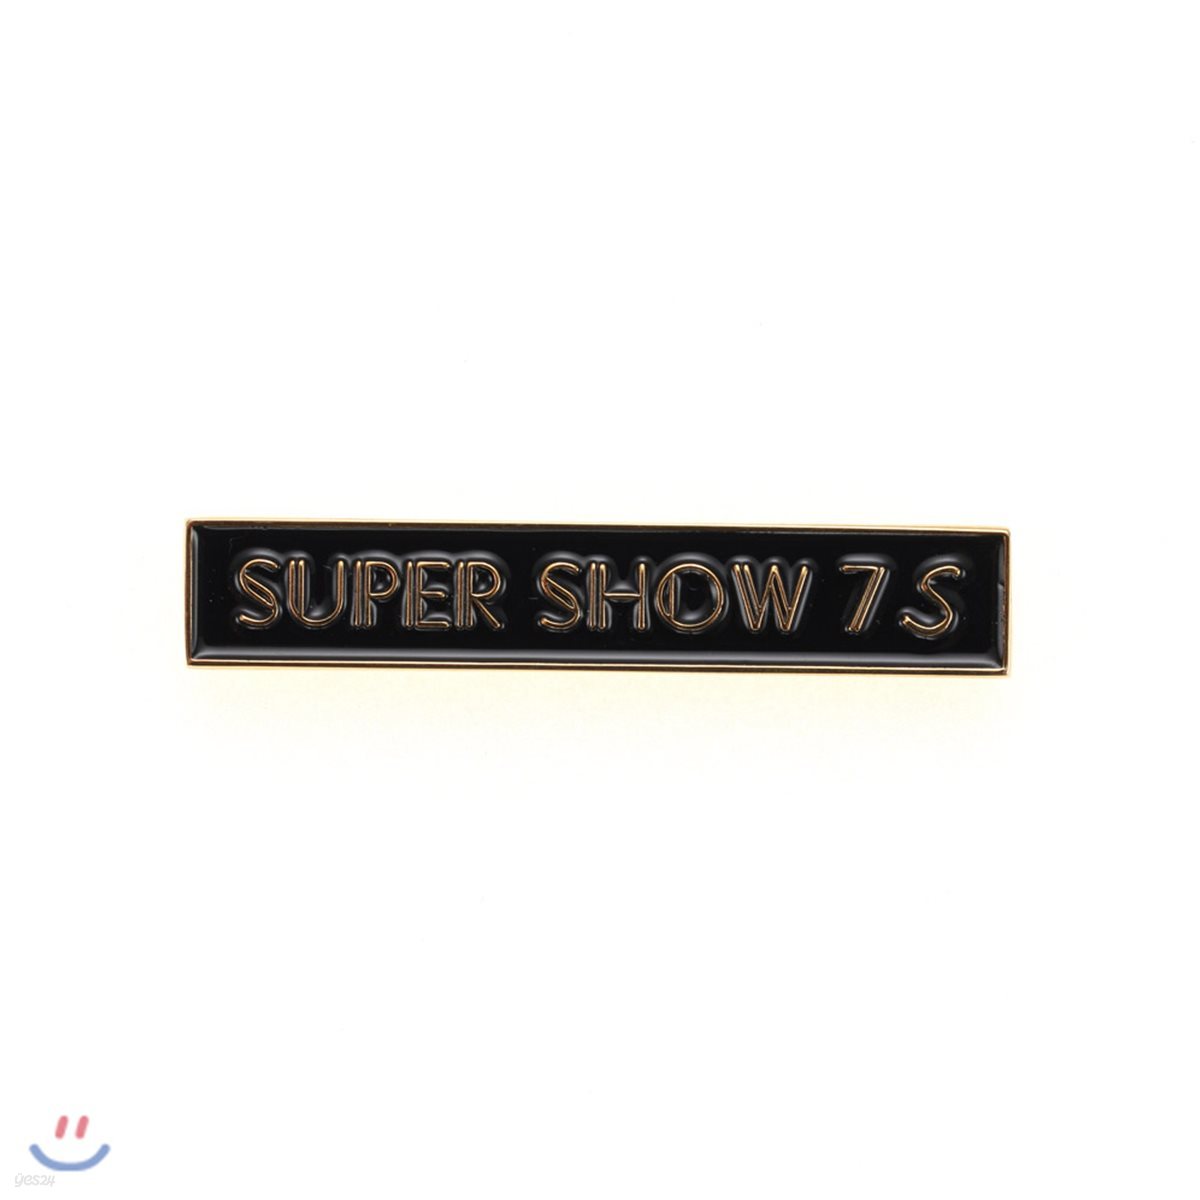 SUPER JUNIOR SUPER SHOW 7S 뱃지 [슈퍼쇼7S]